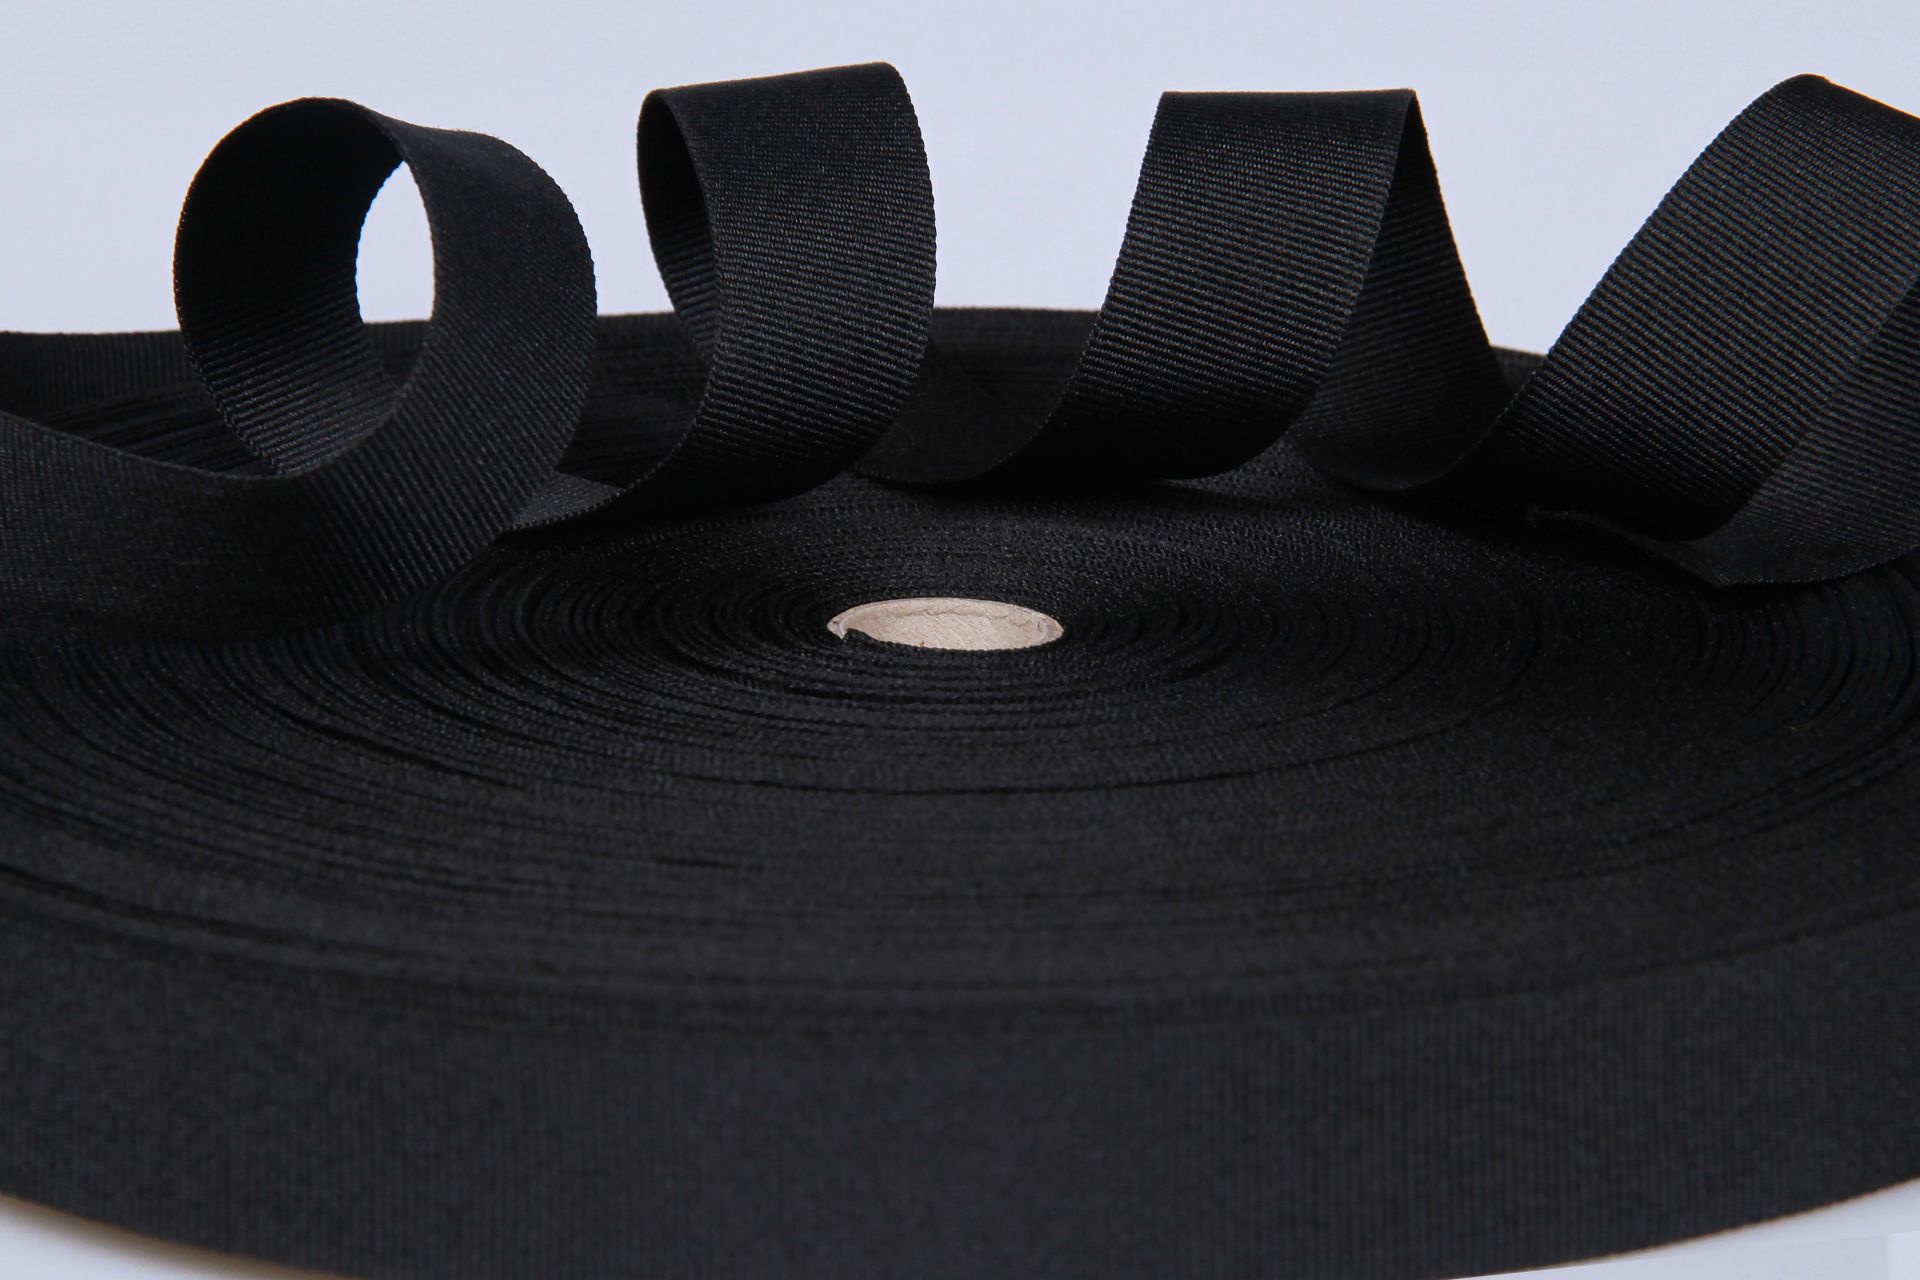 PES-Ripsband  -  20 mm breit  -  50 mtr. Rolle  -  schwarz  -  soft/weich